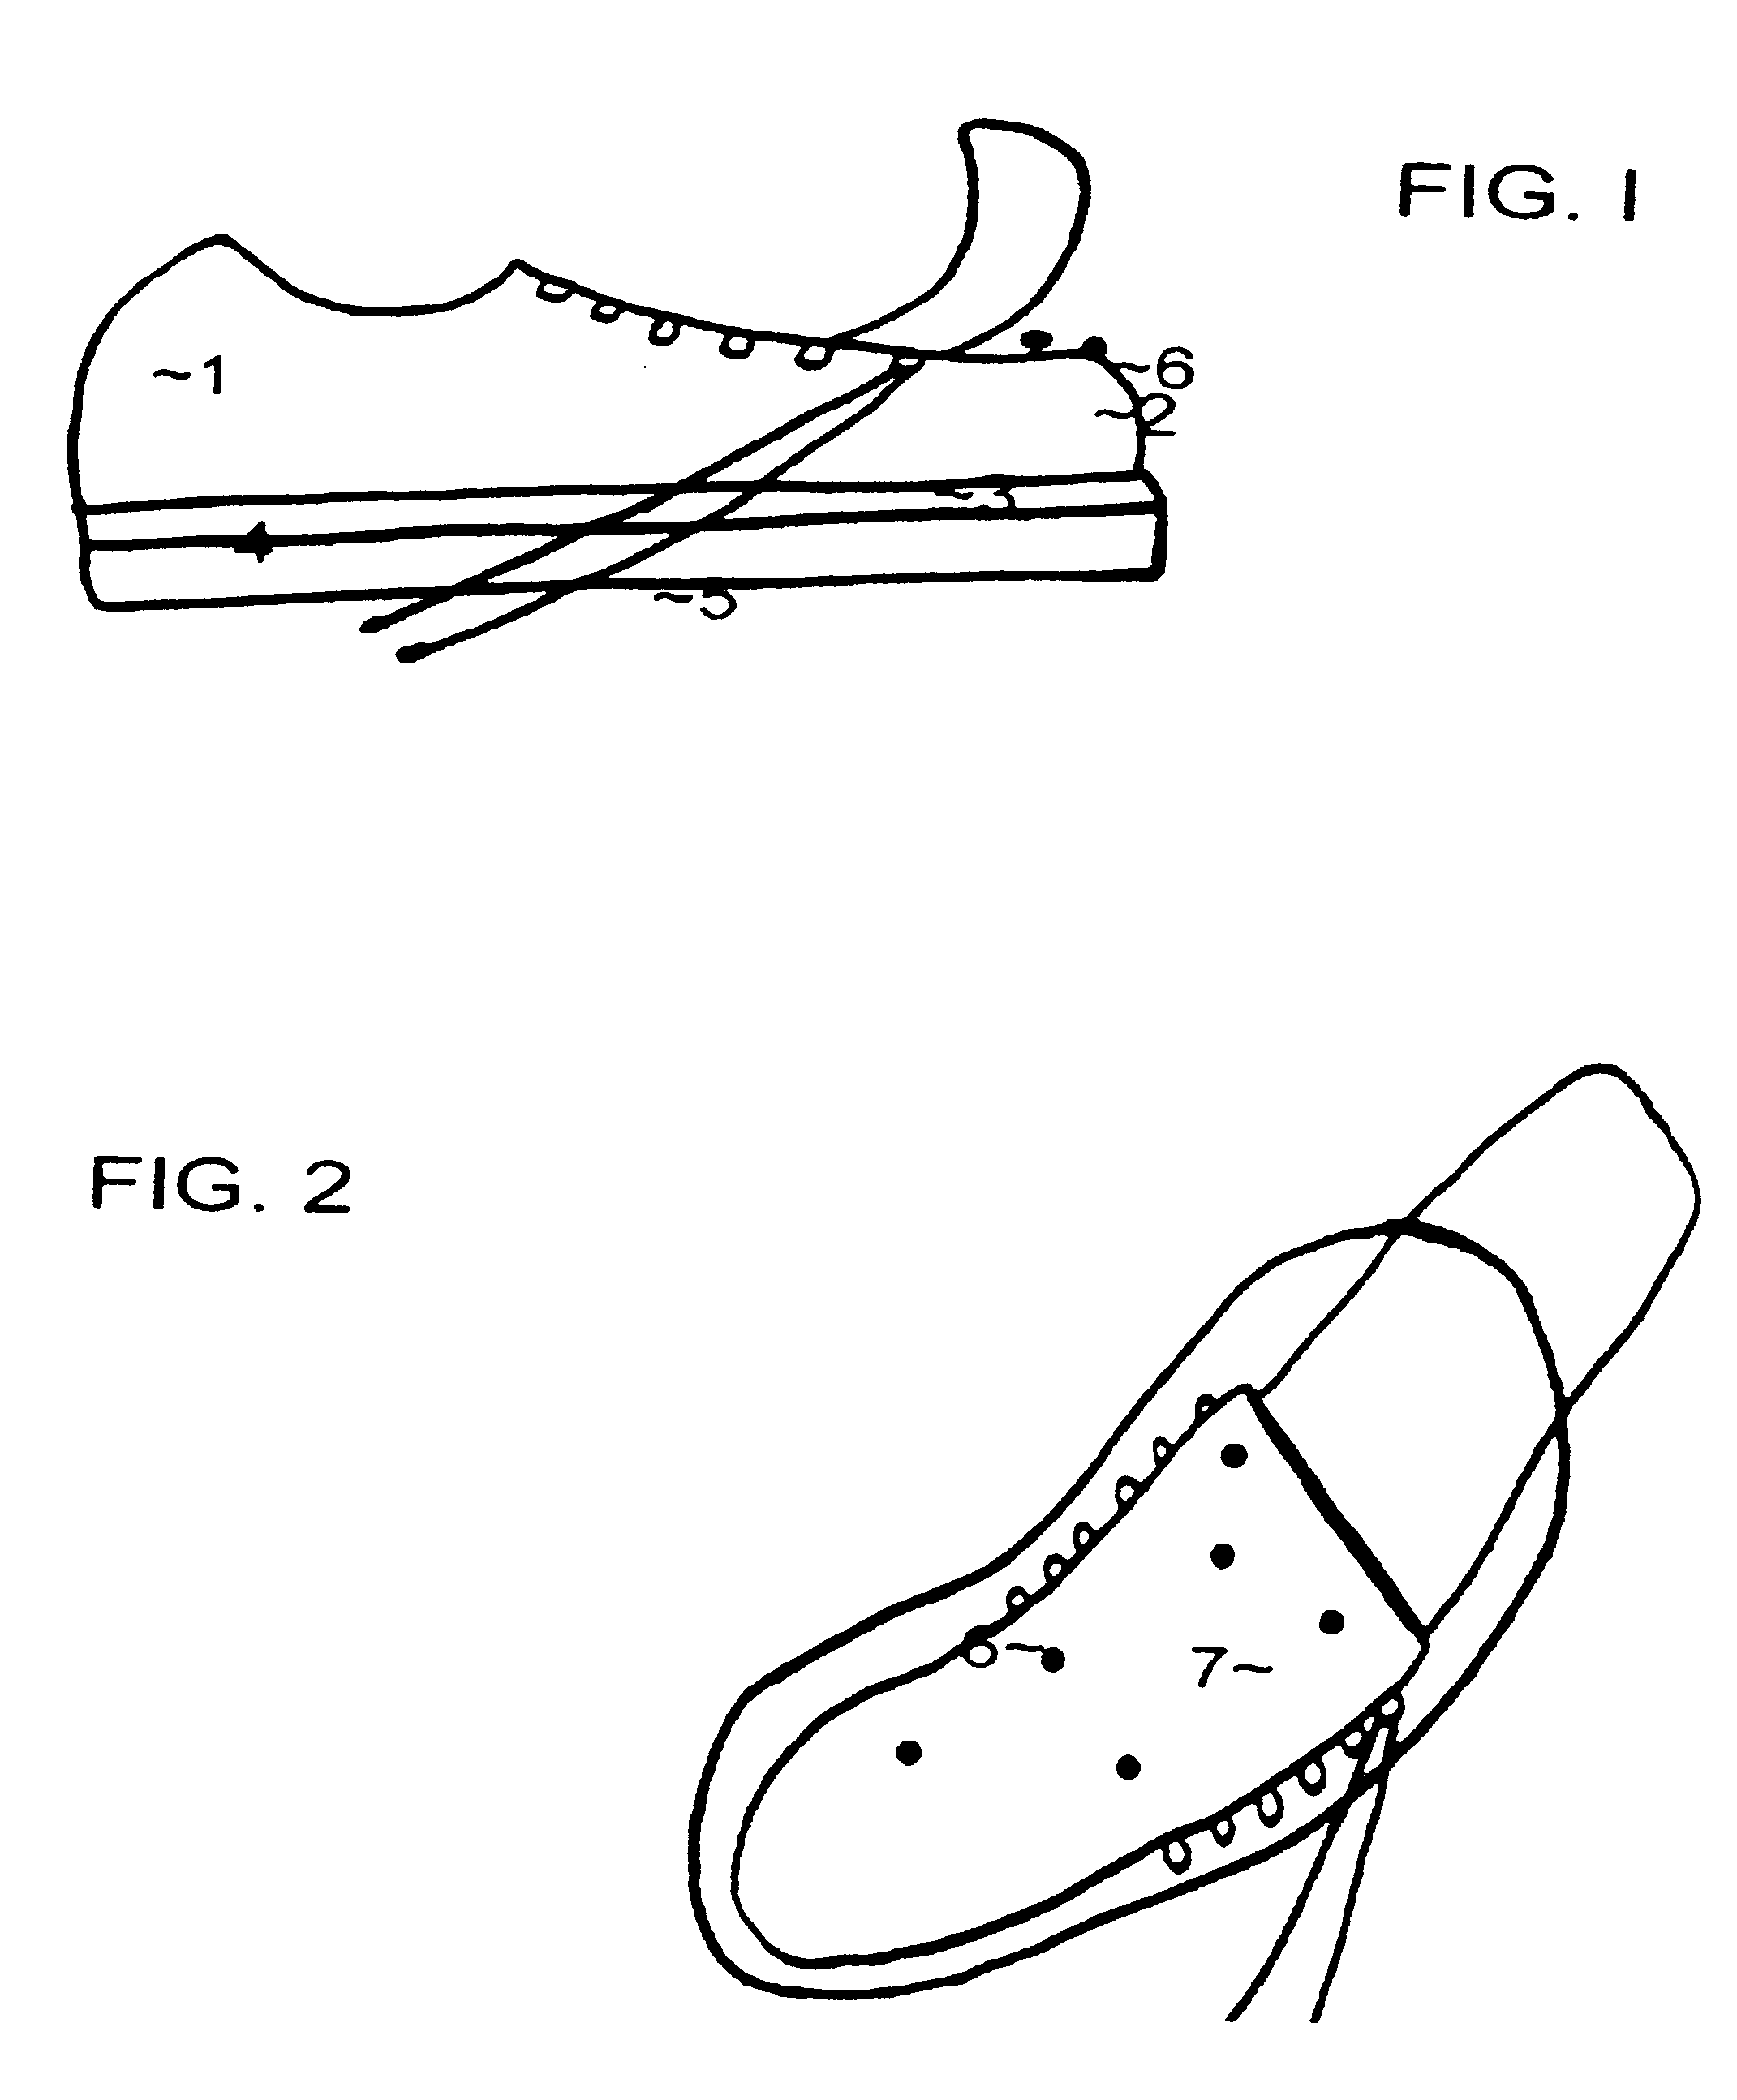 Customized orthopedic shoe soles